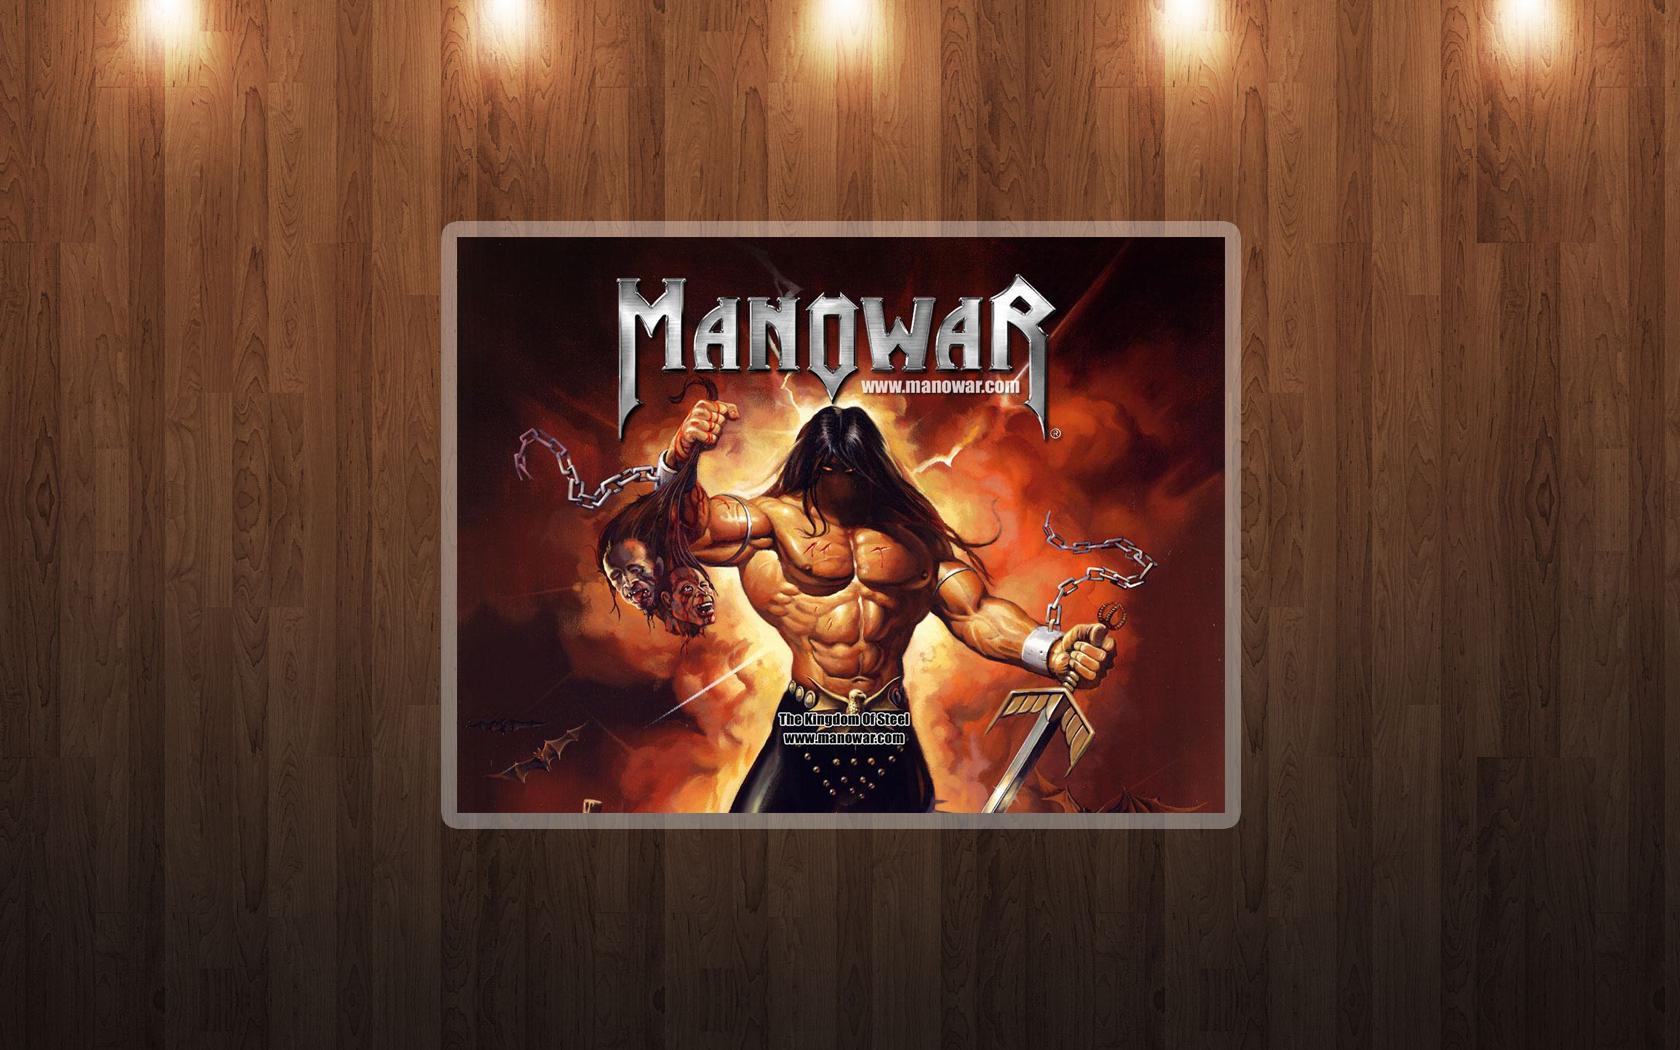 Manowar mp3. Manowar постеры. Manowar плакаты. Группа Manowar иллюстрации. Обои мановар.